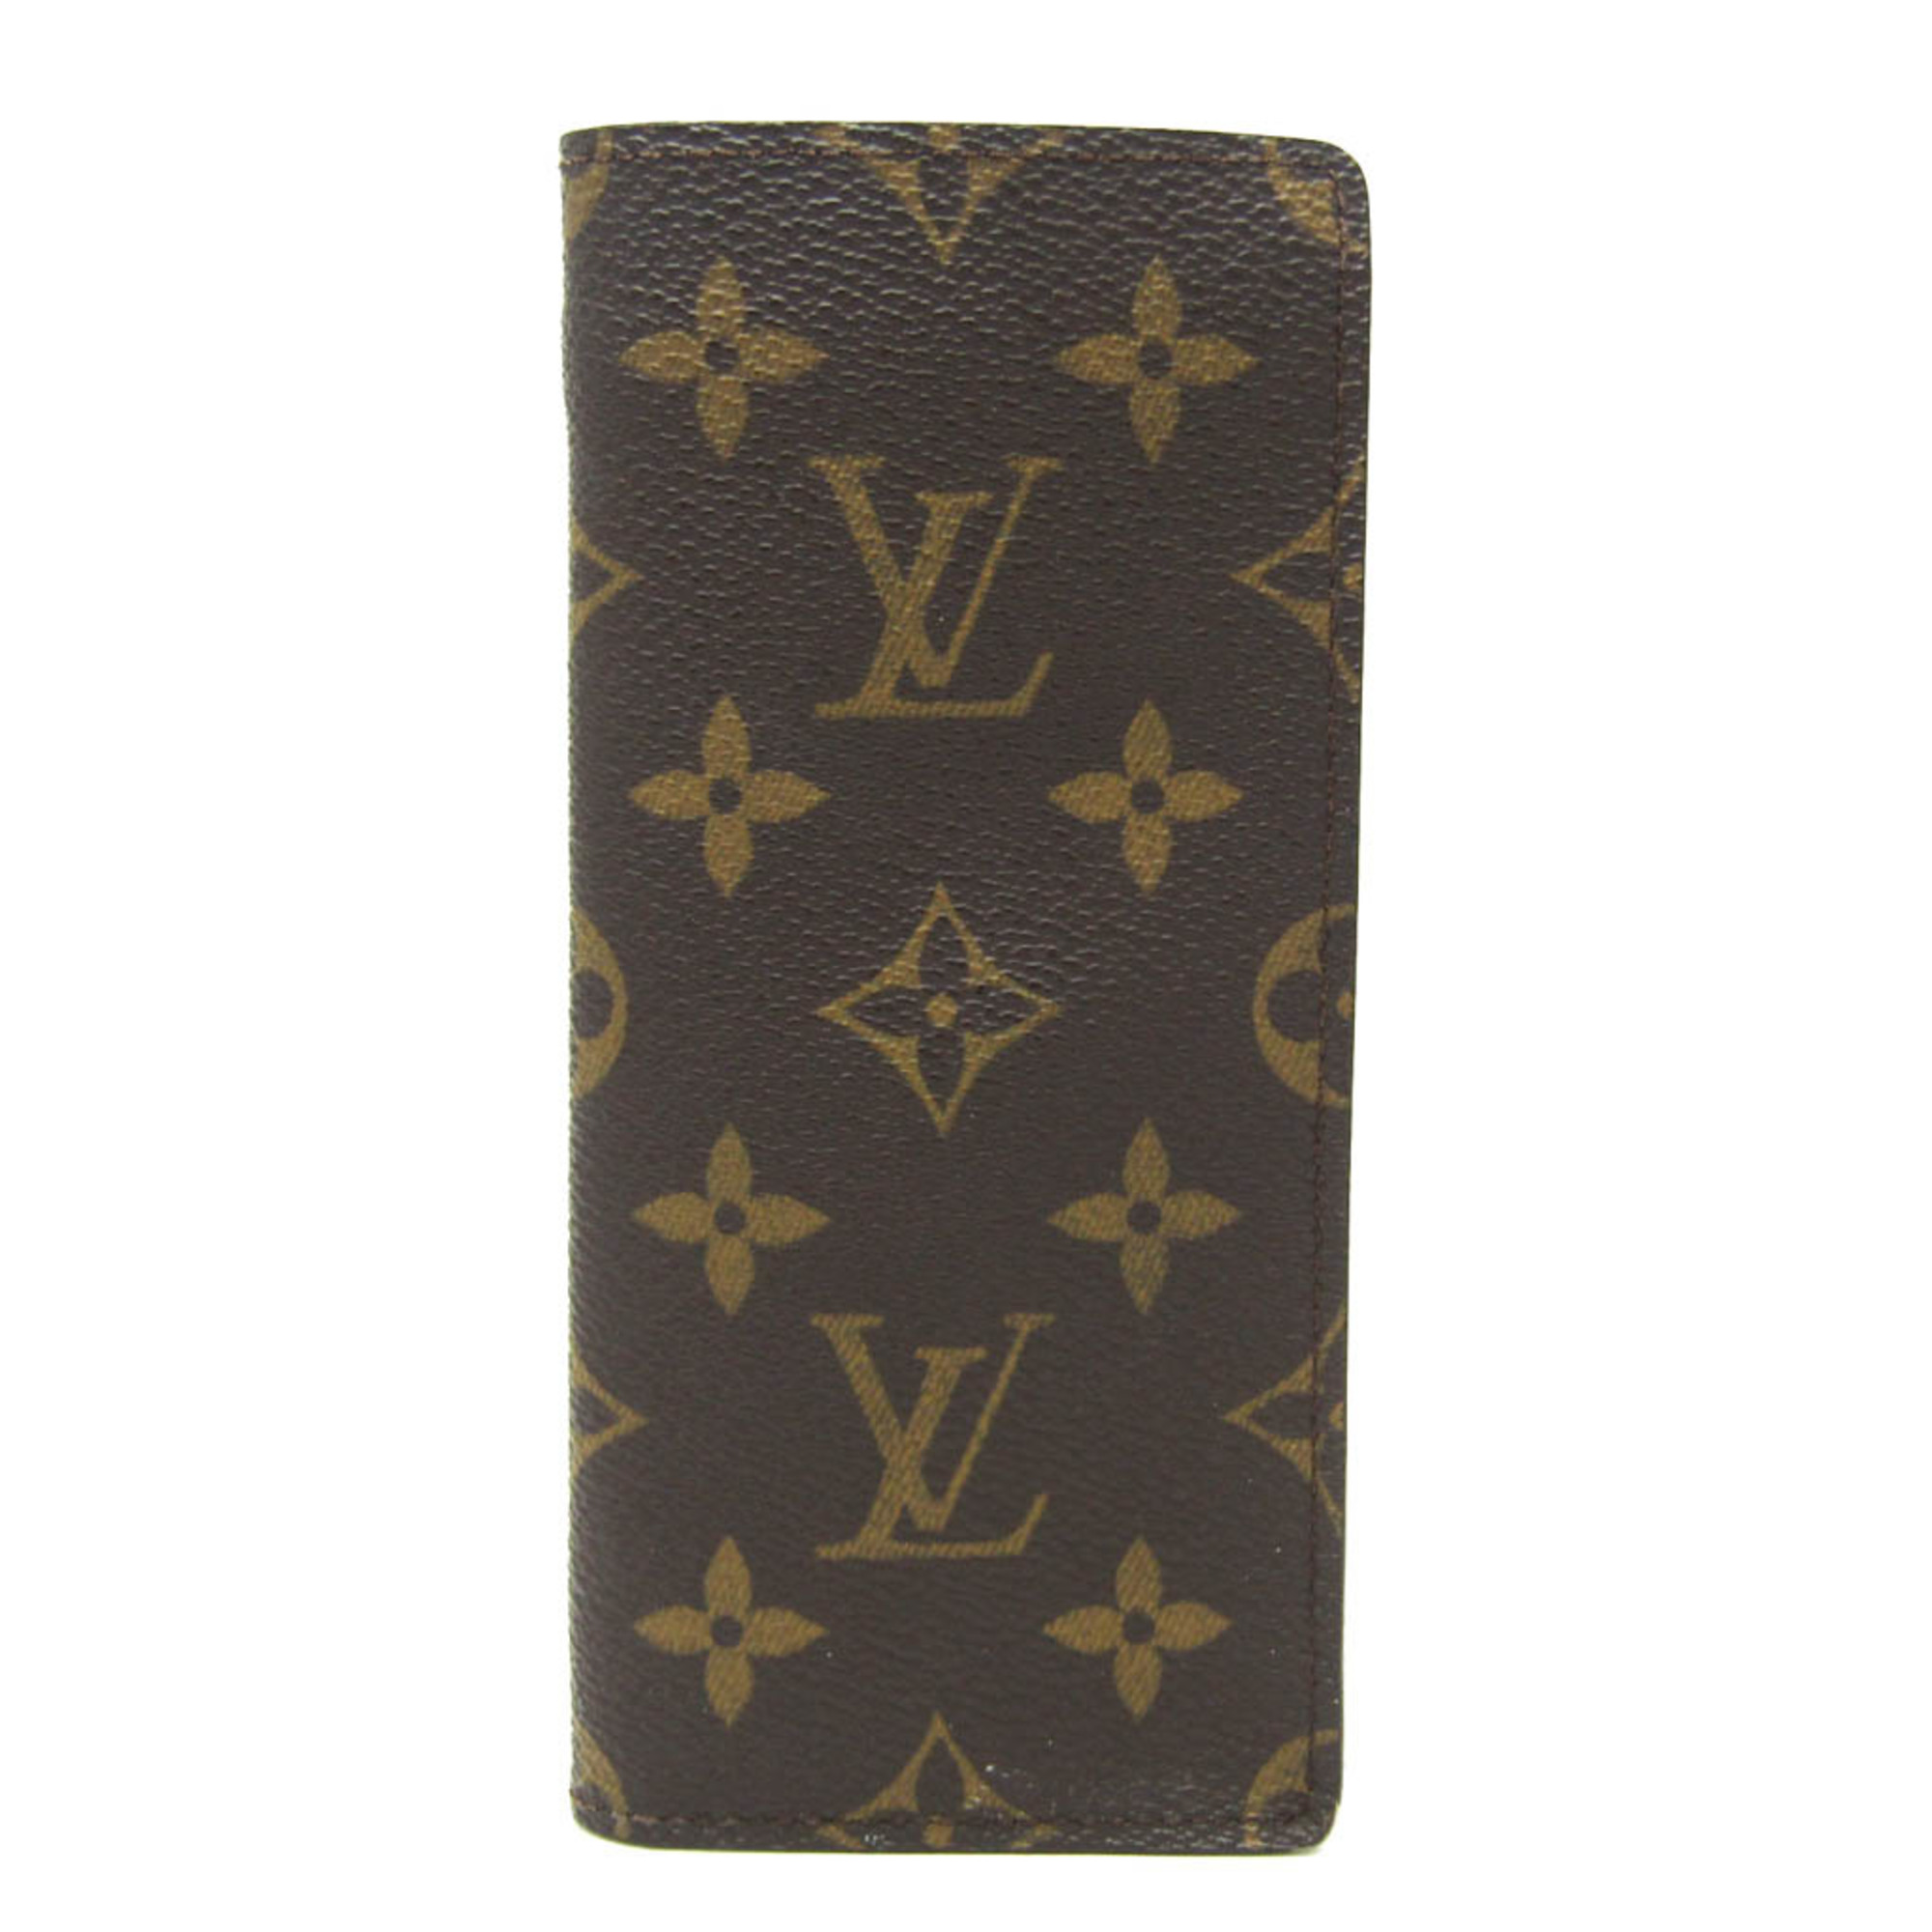 ルイ・ヴィトン(Louis Vuitton) モノグラム エテュイリュネット サーンプル M62962 メガネケース(ソフトケース), モノグラム |  eLADY Globazone